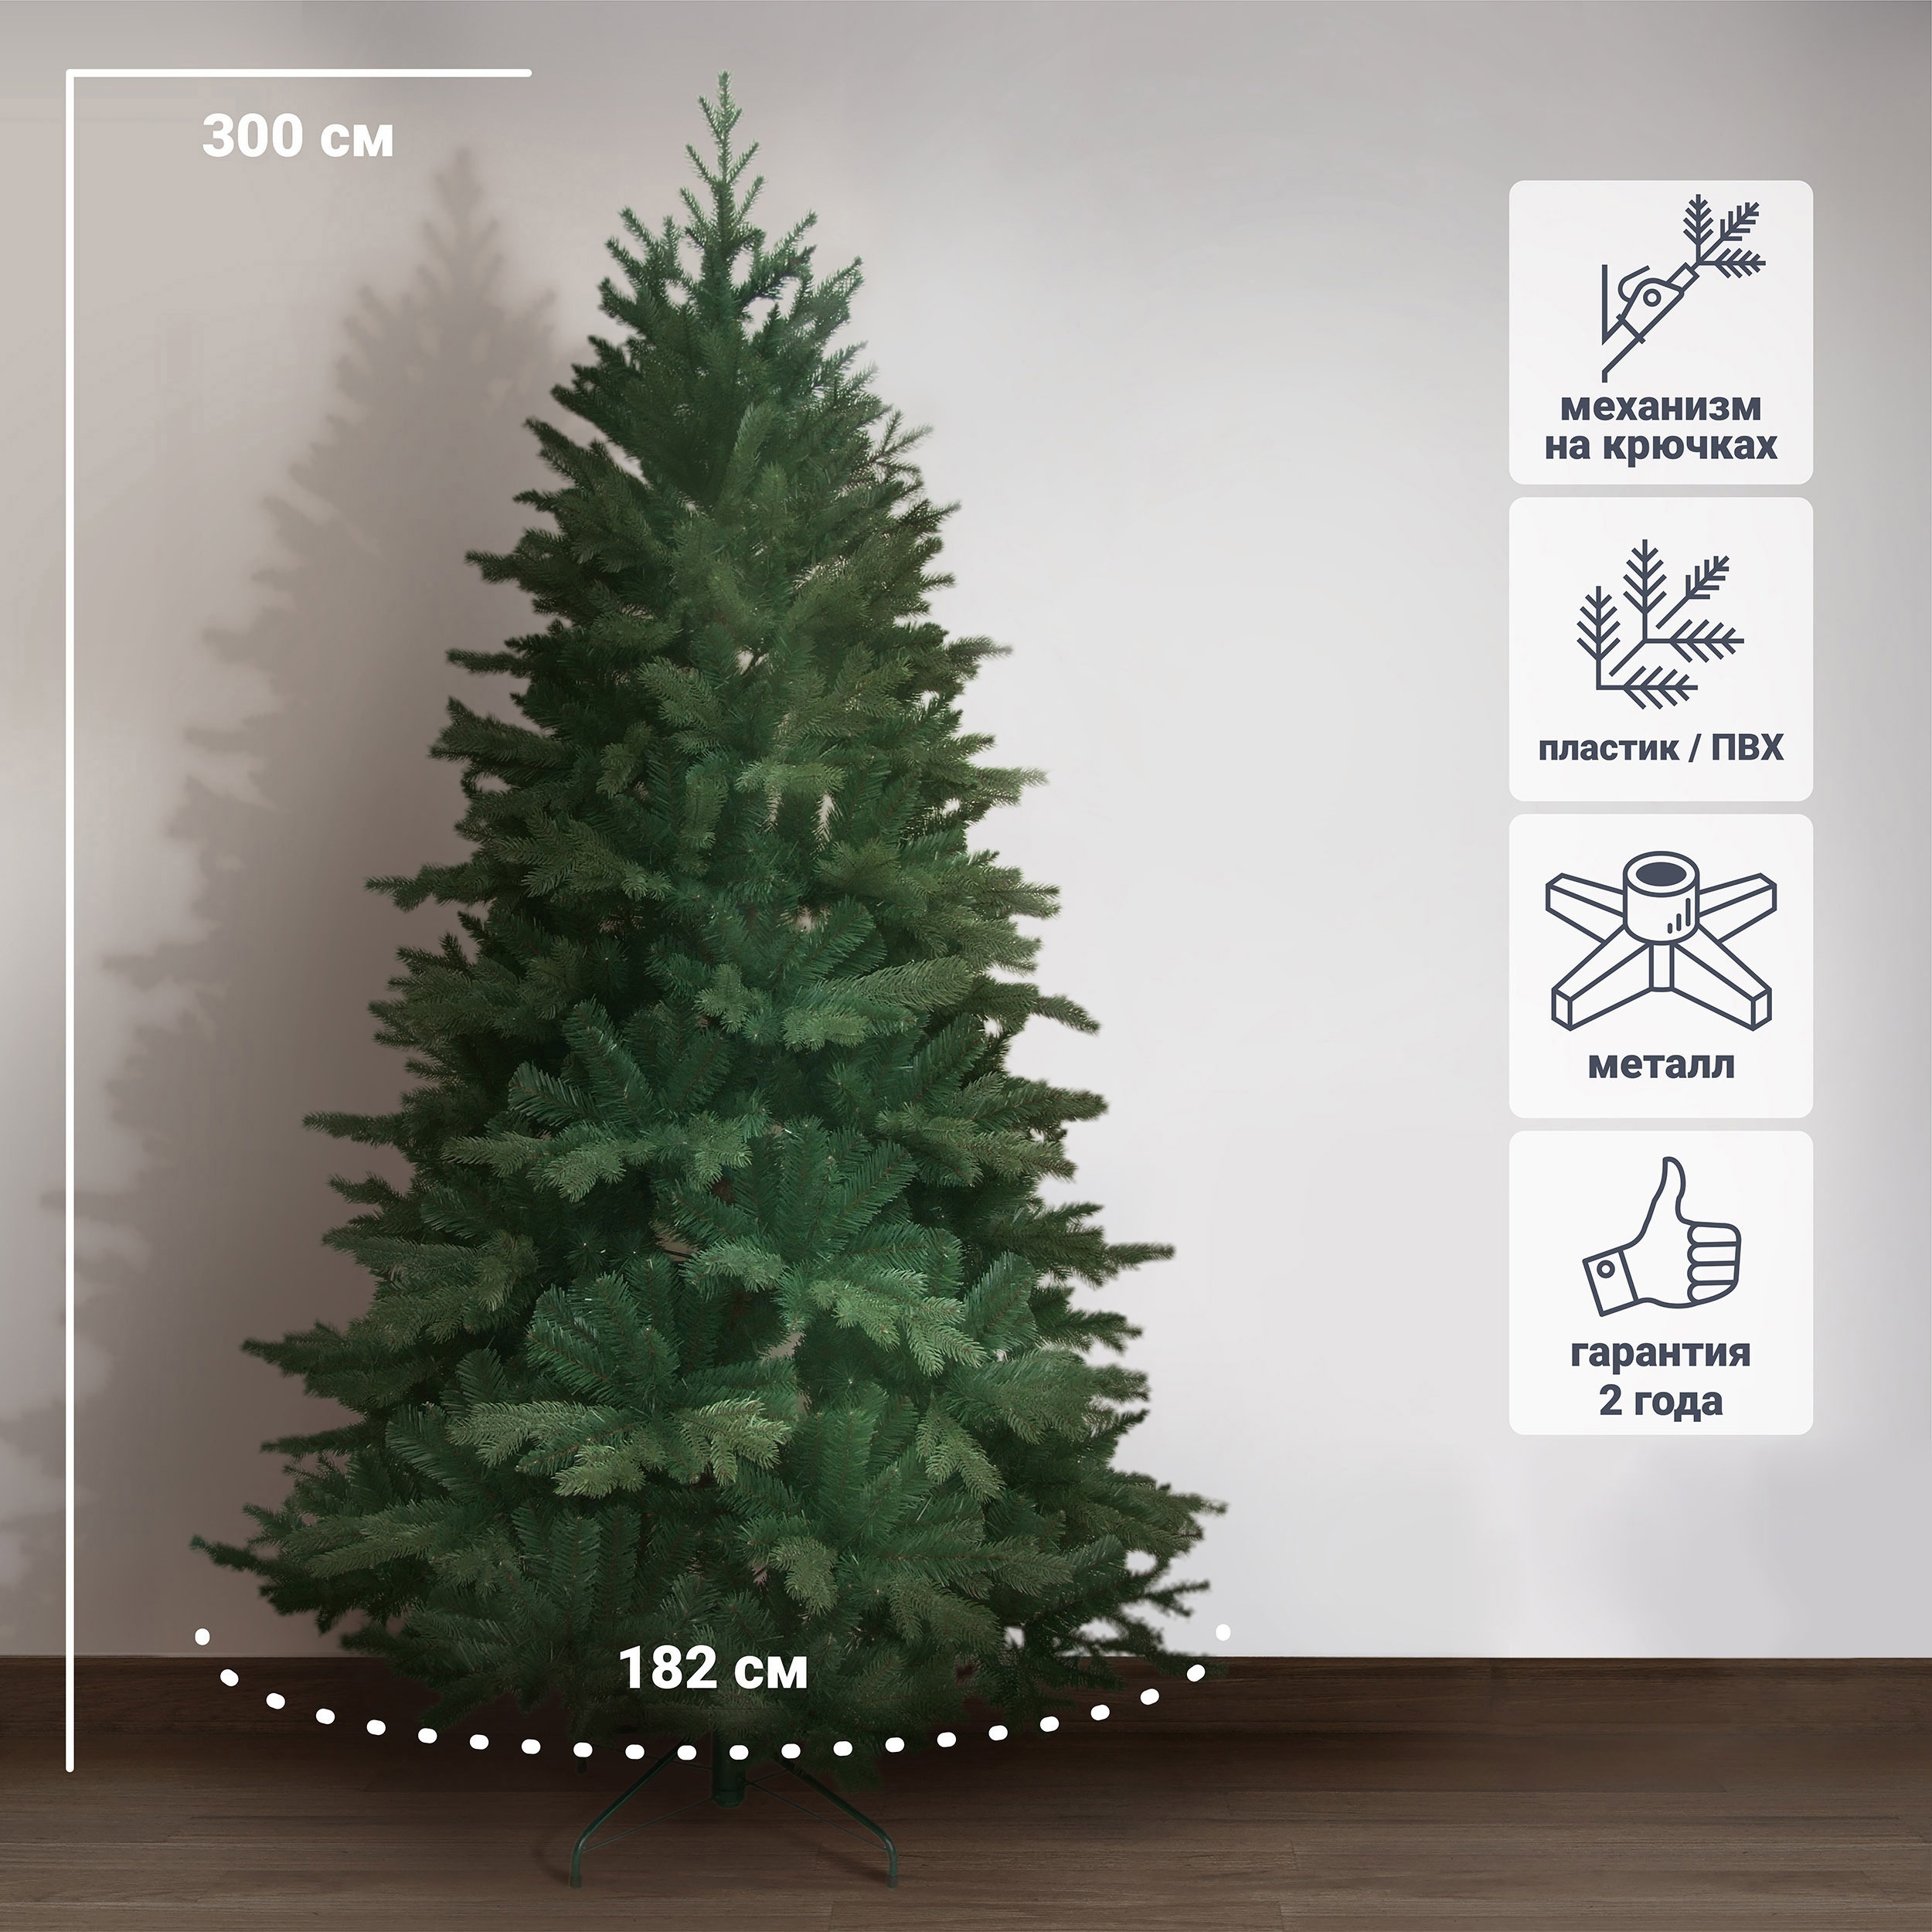 Купить искусственную елку 1,8м см 2,0 метра недорого